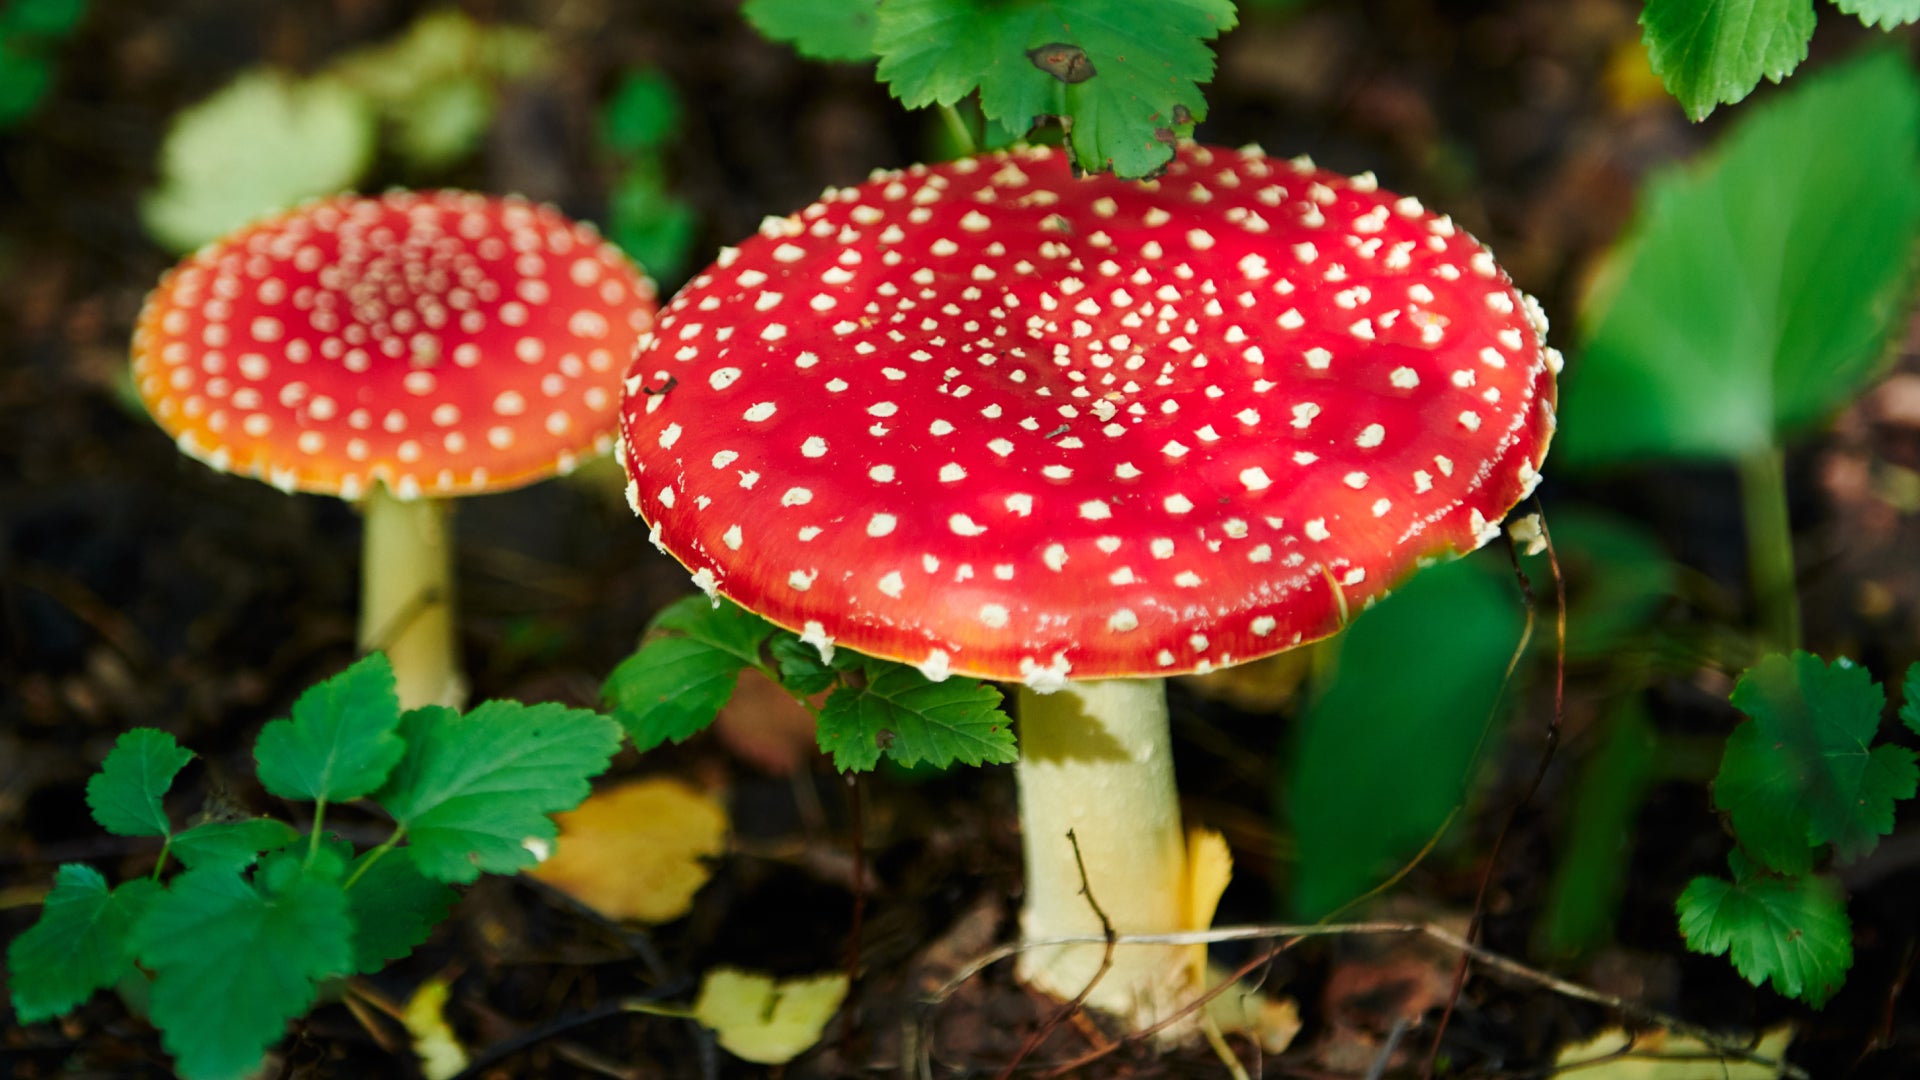 Magic Mushrooms to Kick in